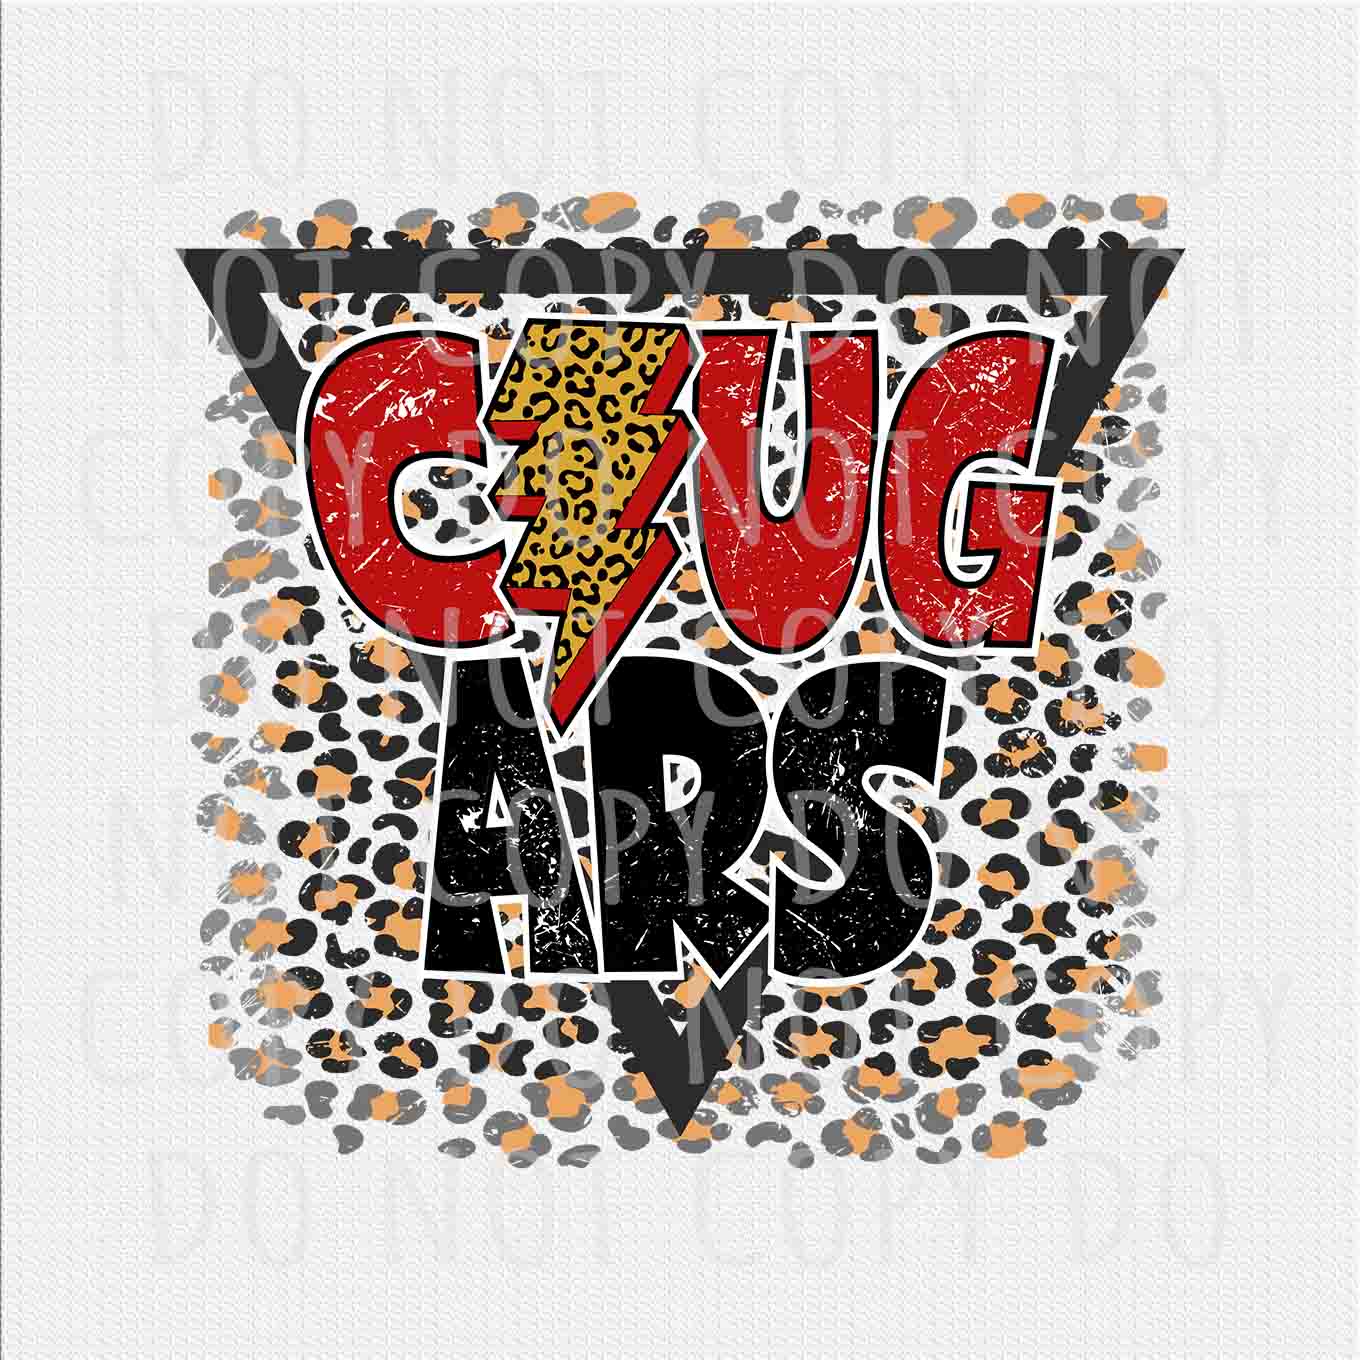 Cougars png, Cougars Team red and black Leopard Lightning Bolt design png, Digital download